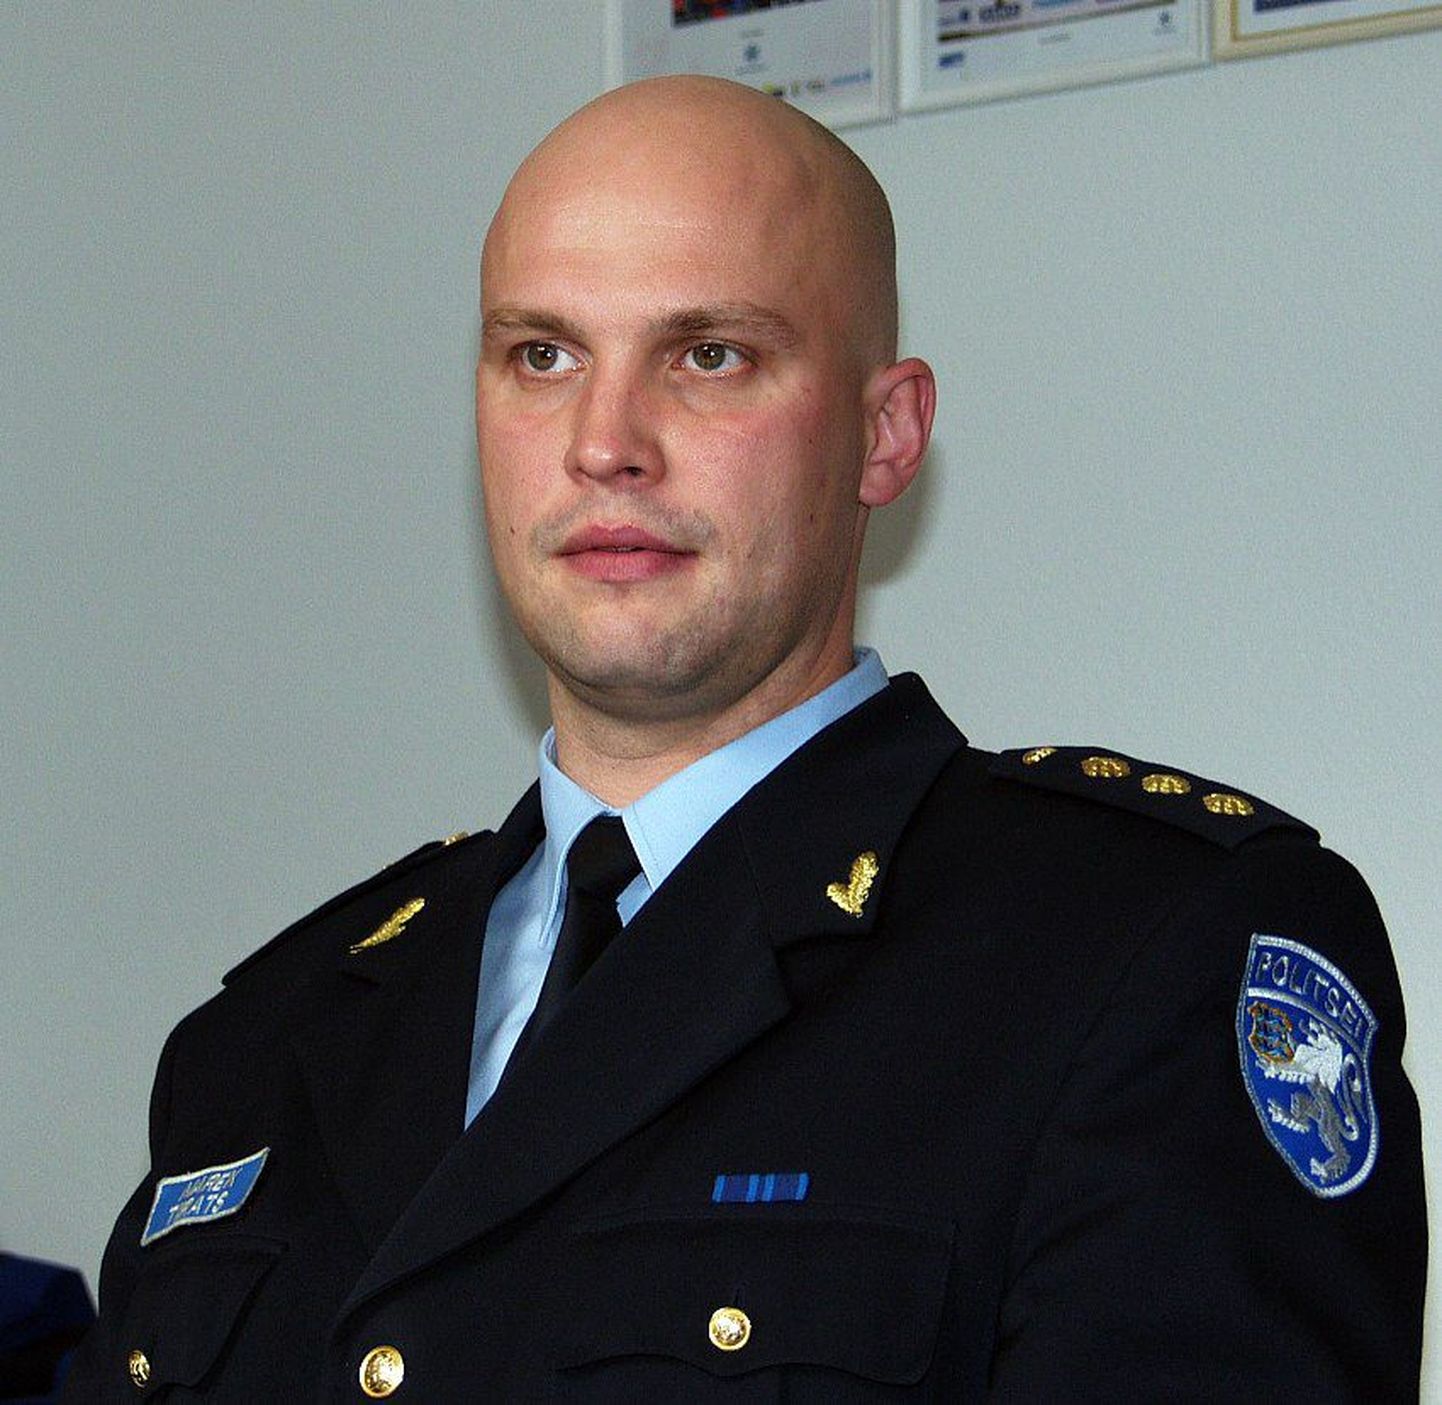 Endine Lõuna politseiprefektuuri liiklustalituse ülemkomissar Marek Tiirats.